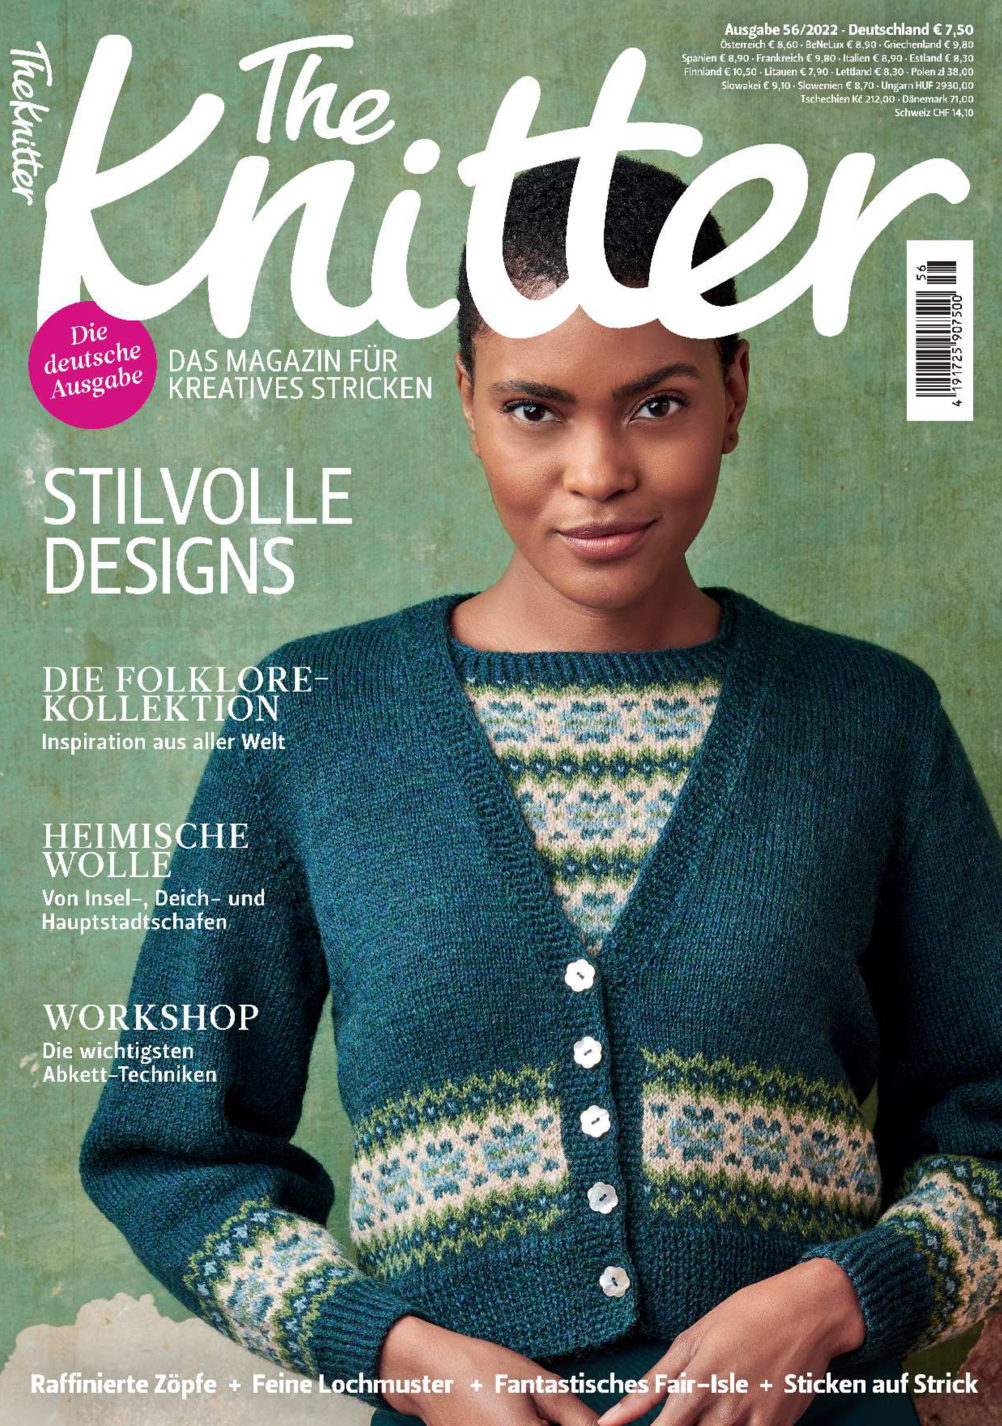 The Knitter 56/2022 - Stilvolle Designs